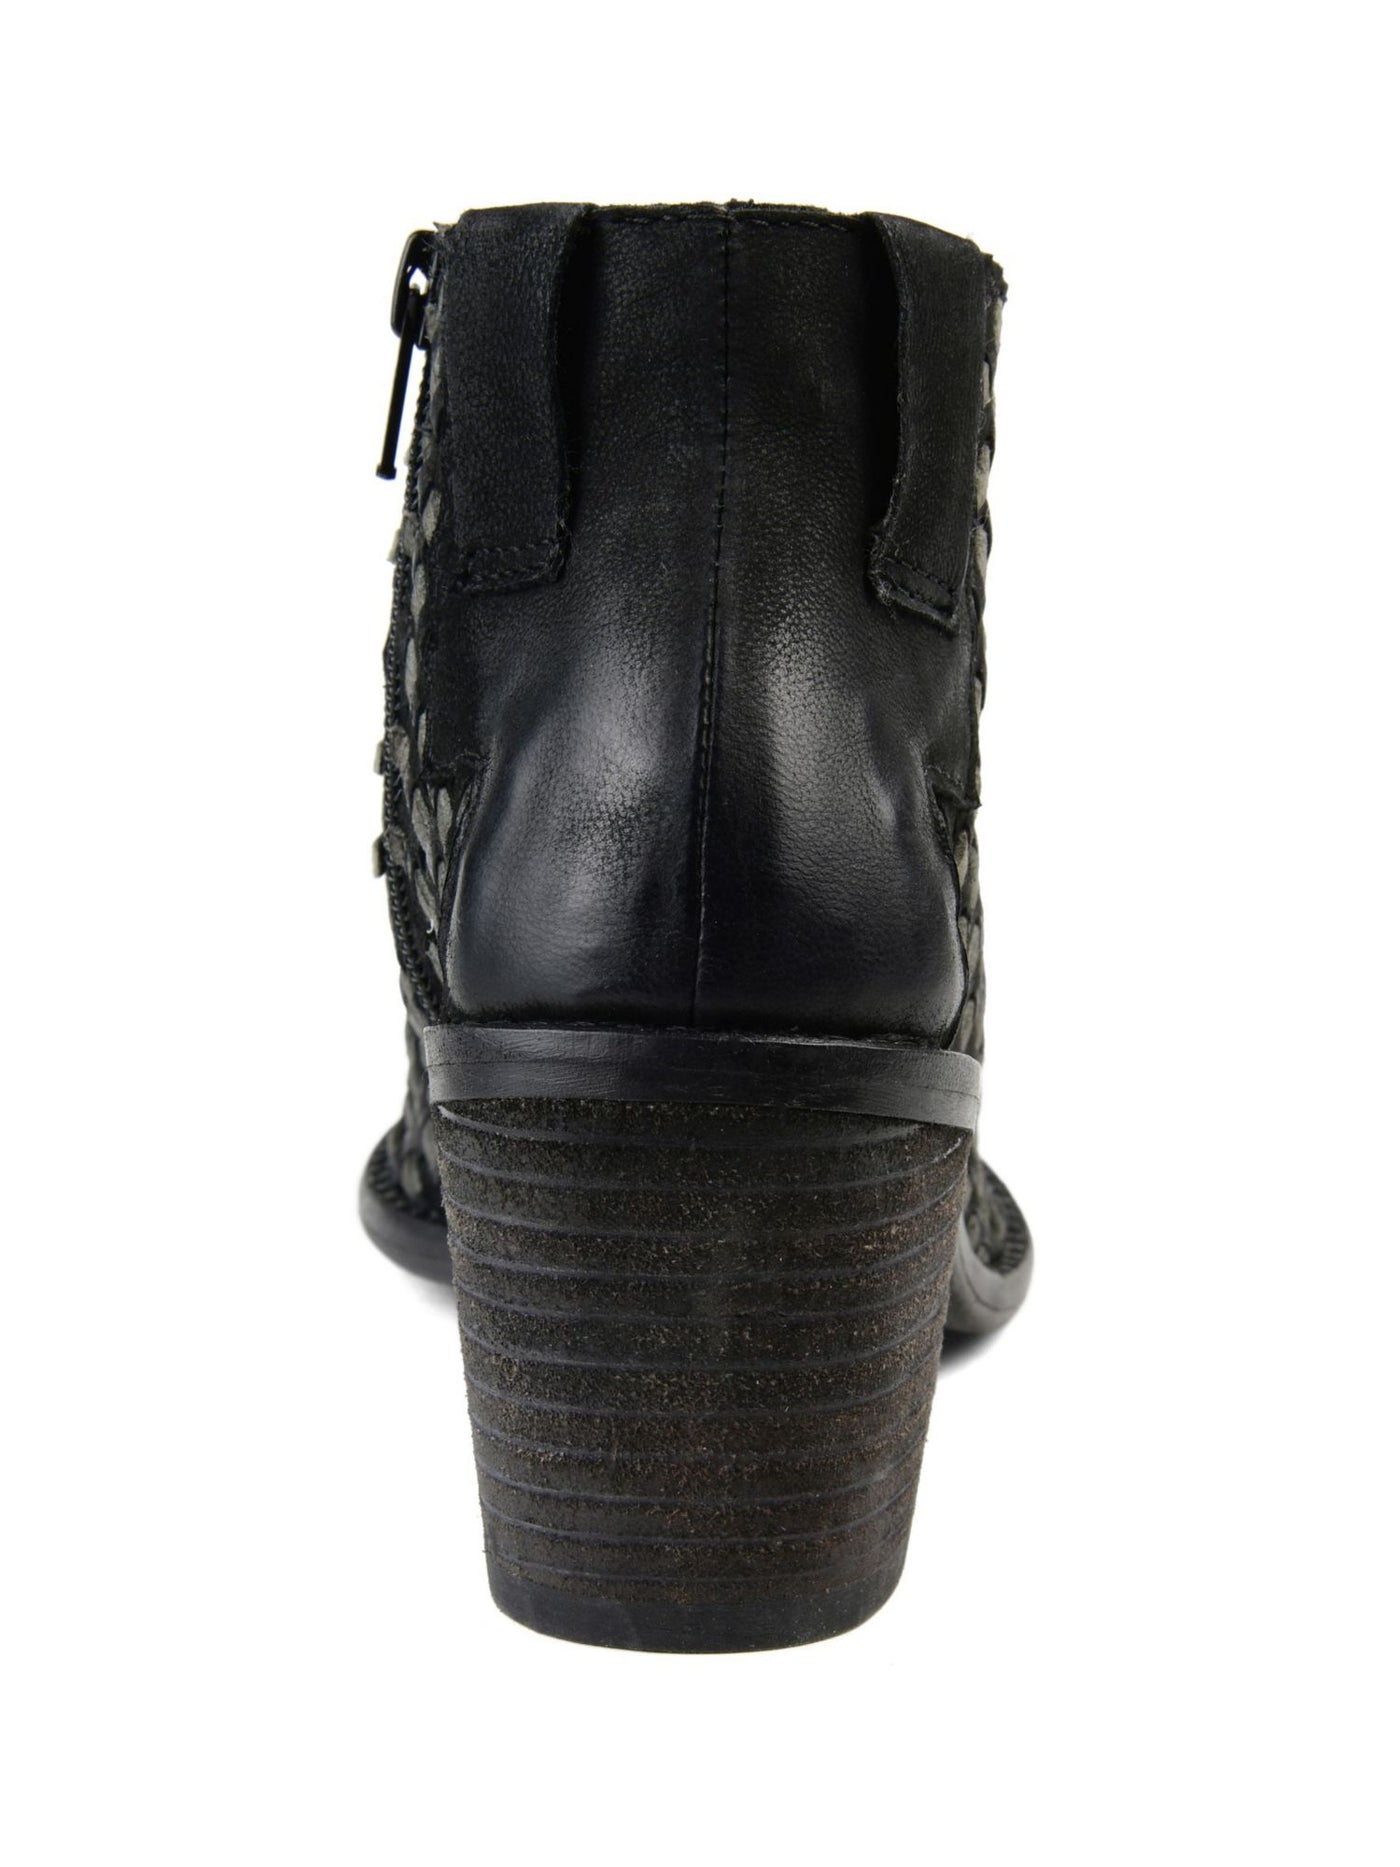 JOURNEE COLLECTION Womens Black Comfort Woven Breathable Devine Open Toe Block Heel Zip-Up Leather Booties 10